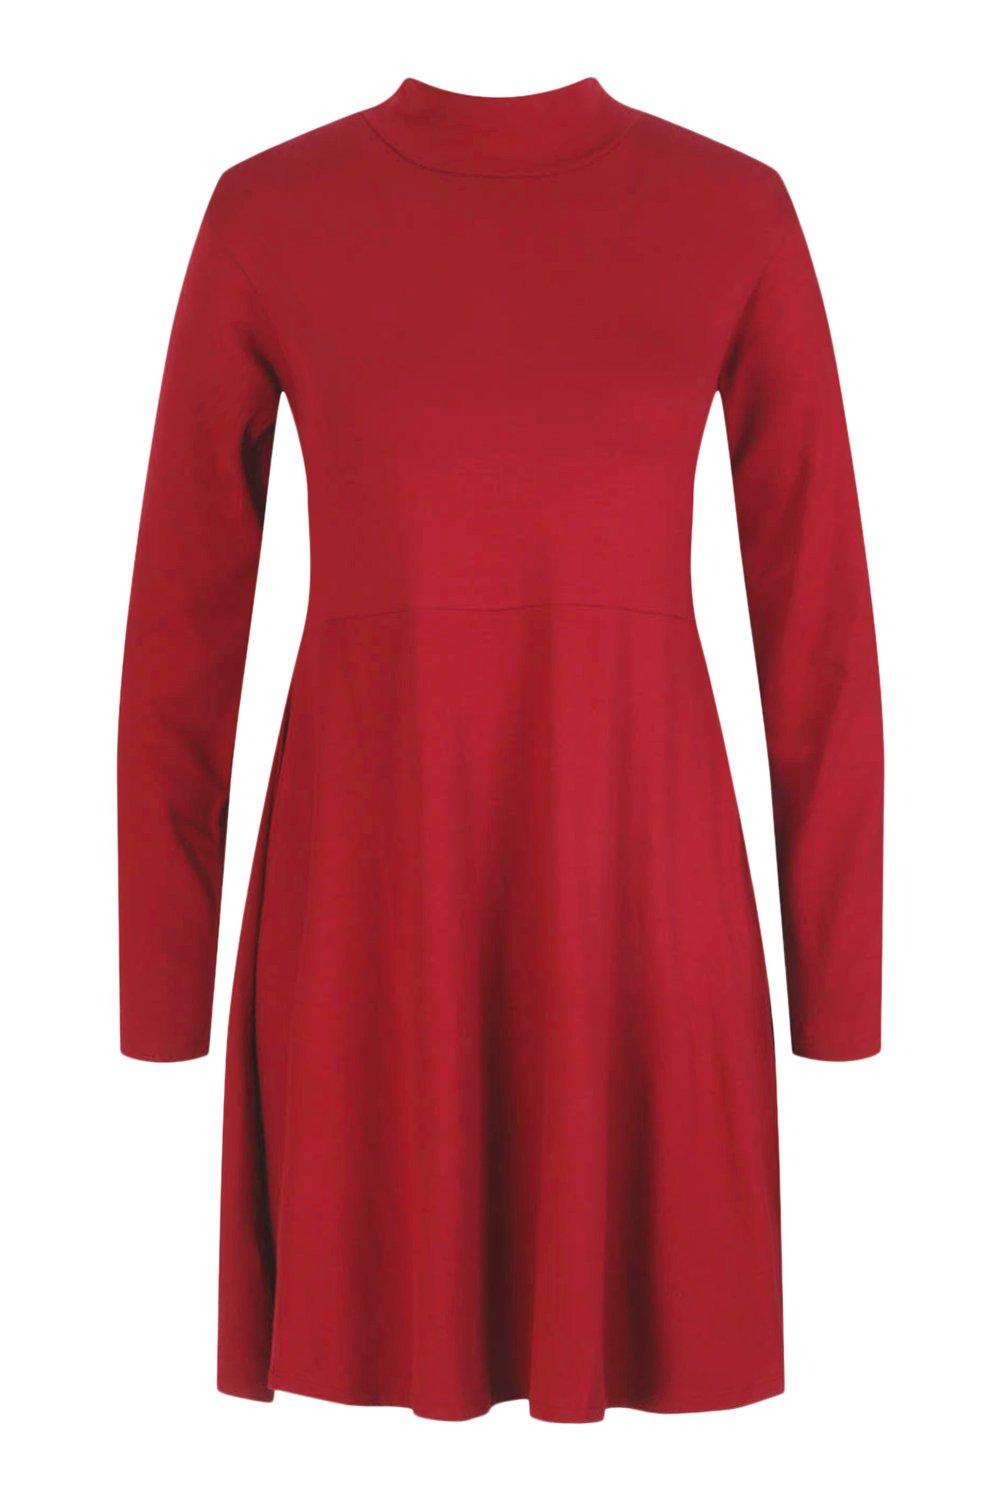 FASHIONGYAL UK M03 Polo Neck Long Sleeve Skater Dress Plus Size 